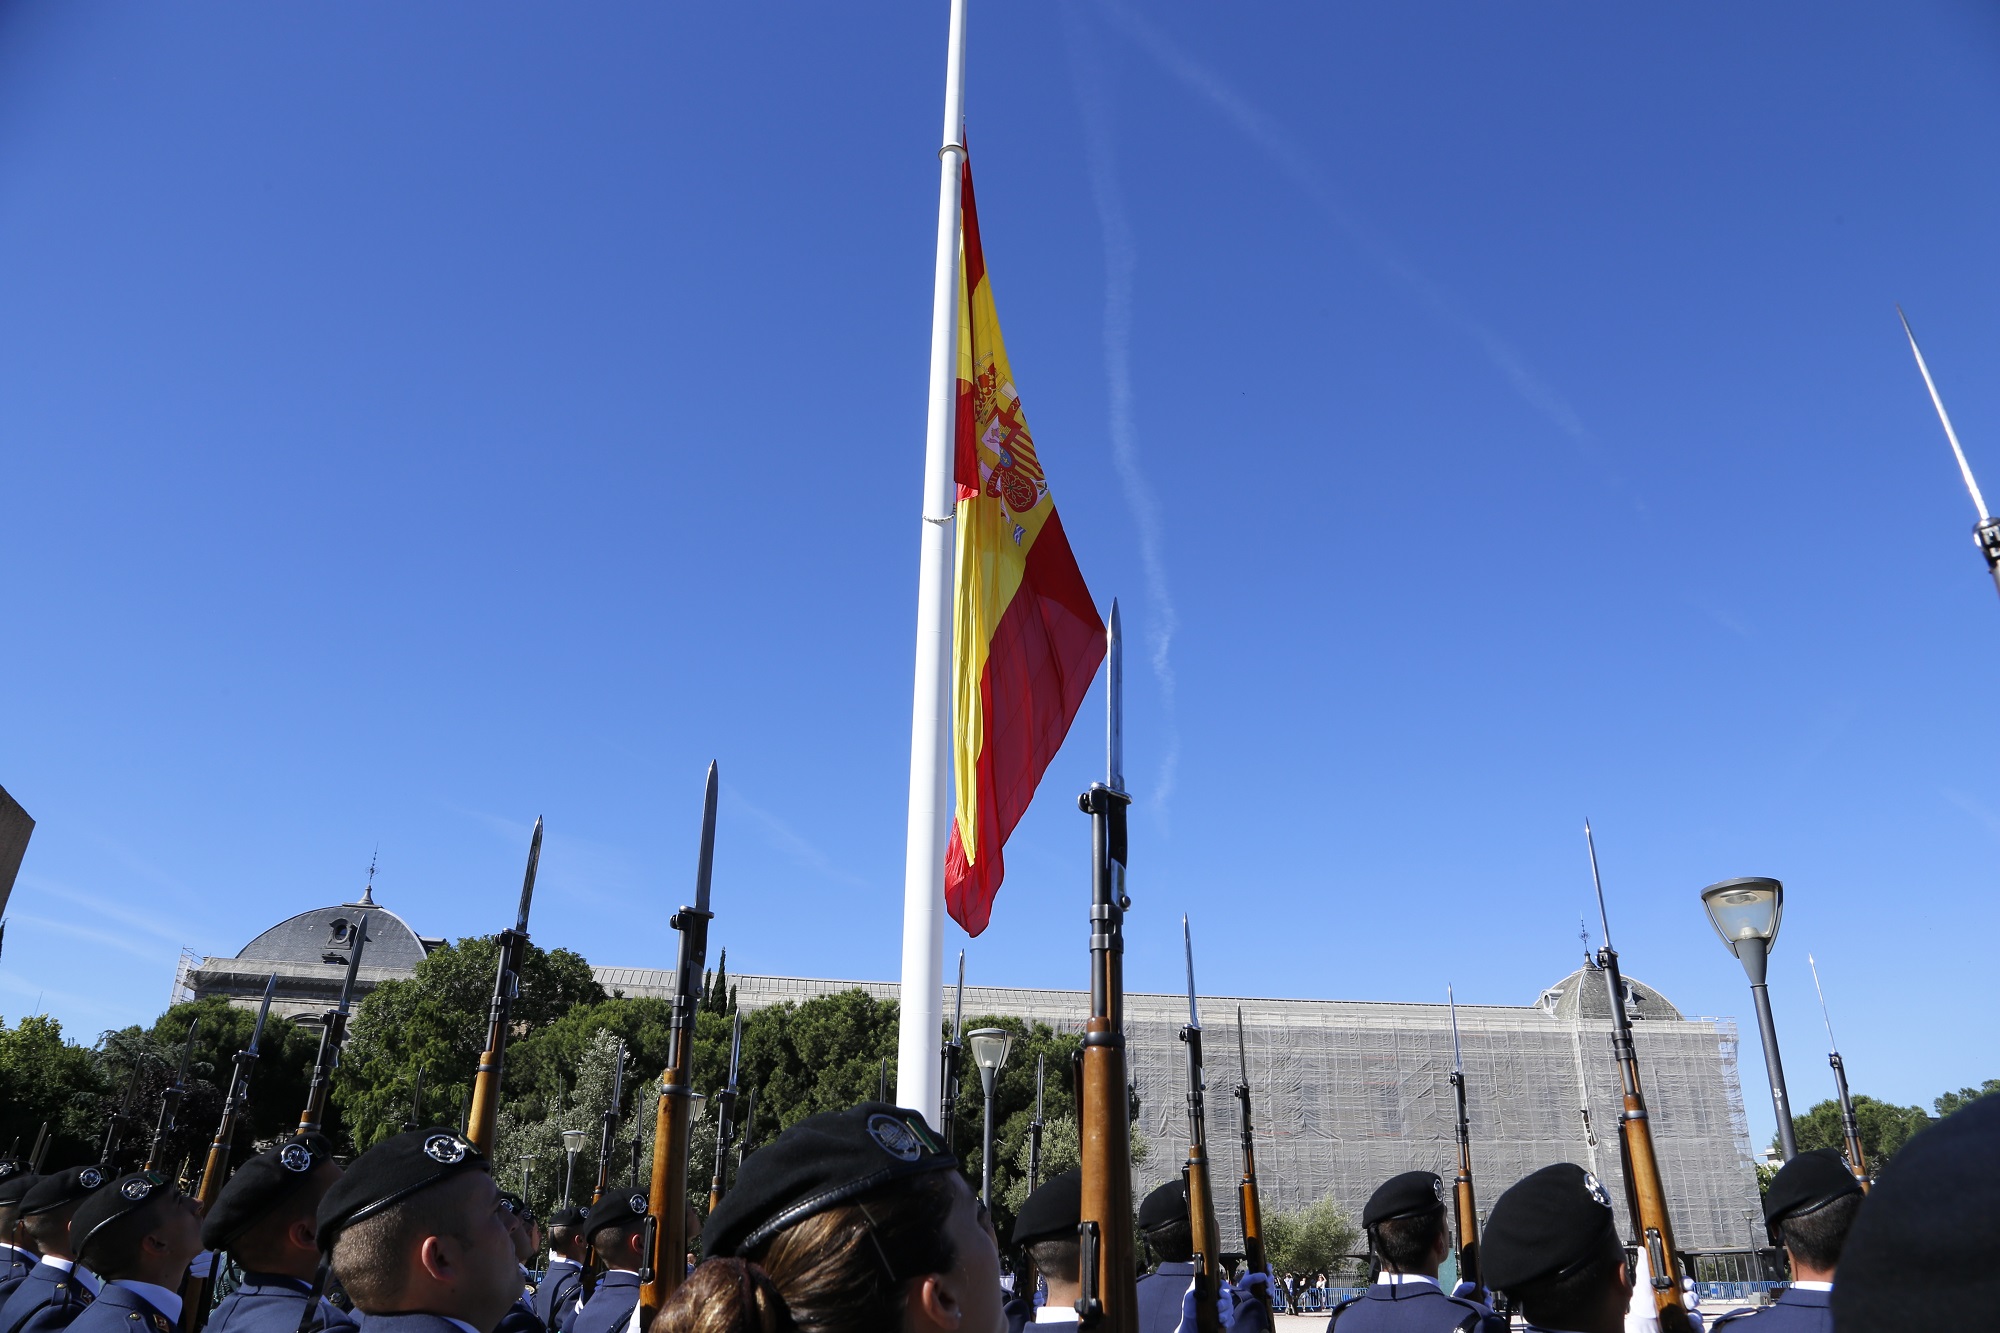 Izado Solemne de Bandera con motivo del III Aniversario de la Proclamación de S.M. el Rey Felipe VI